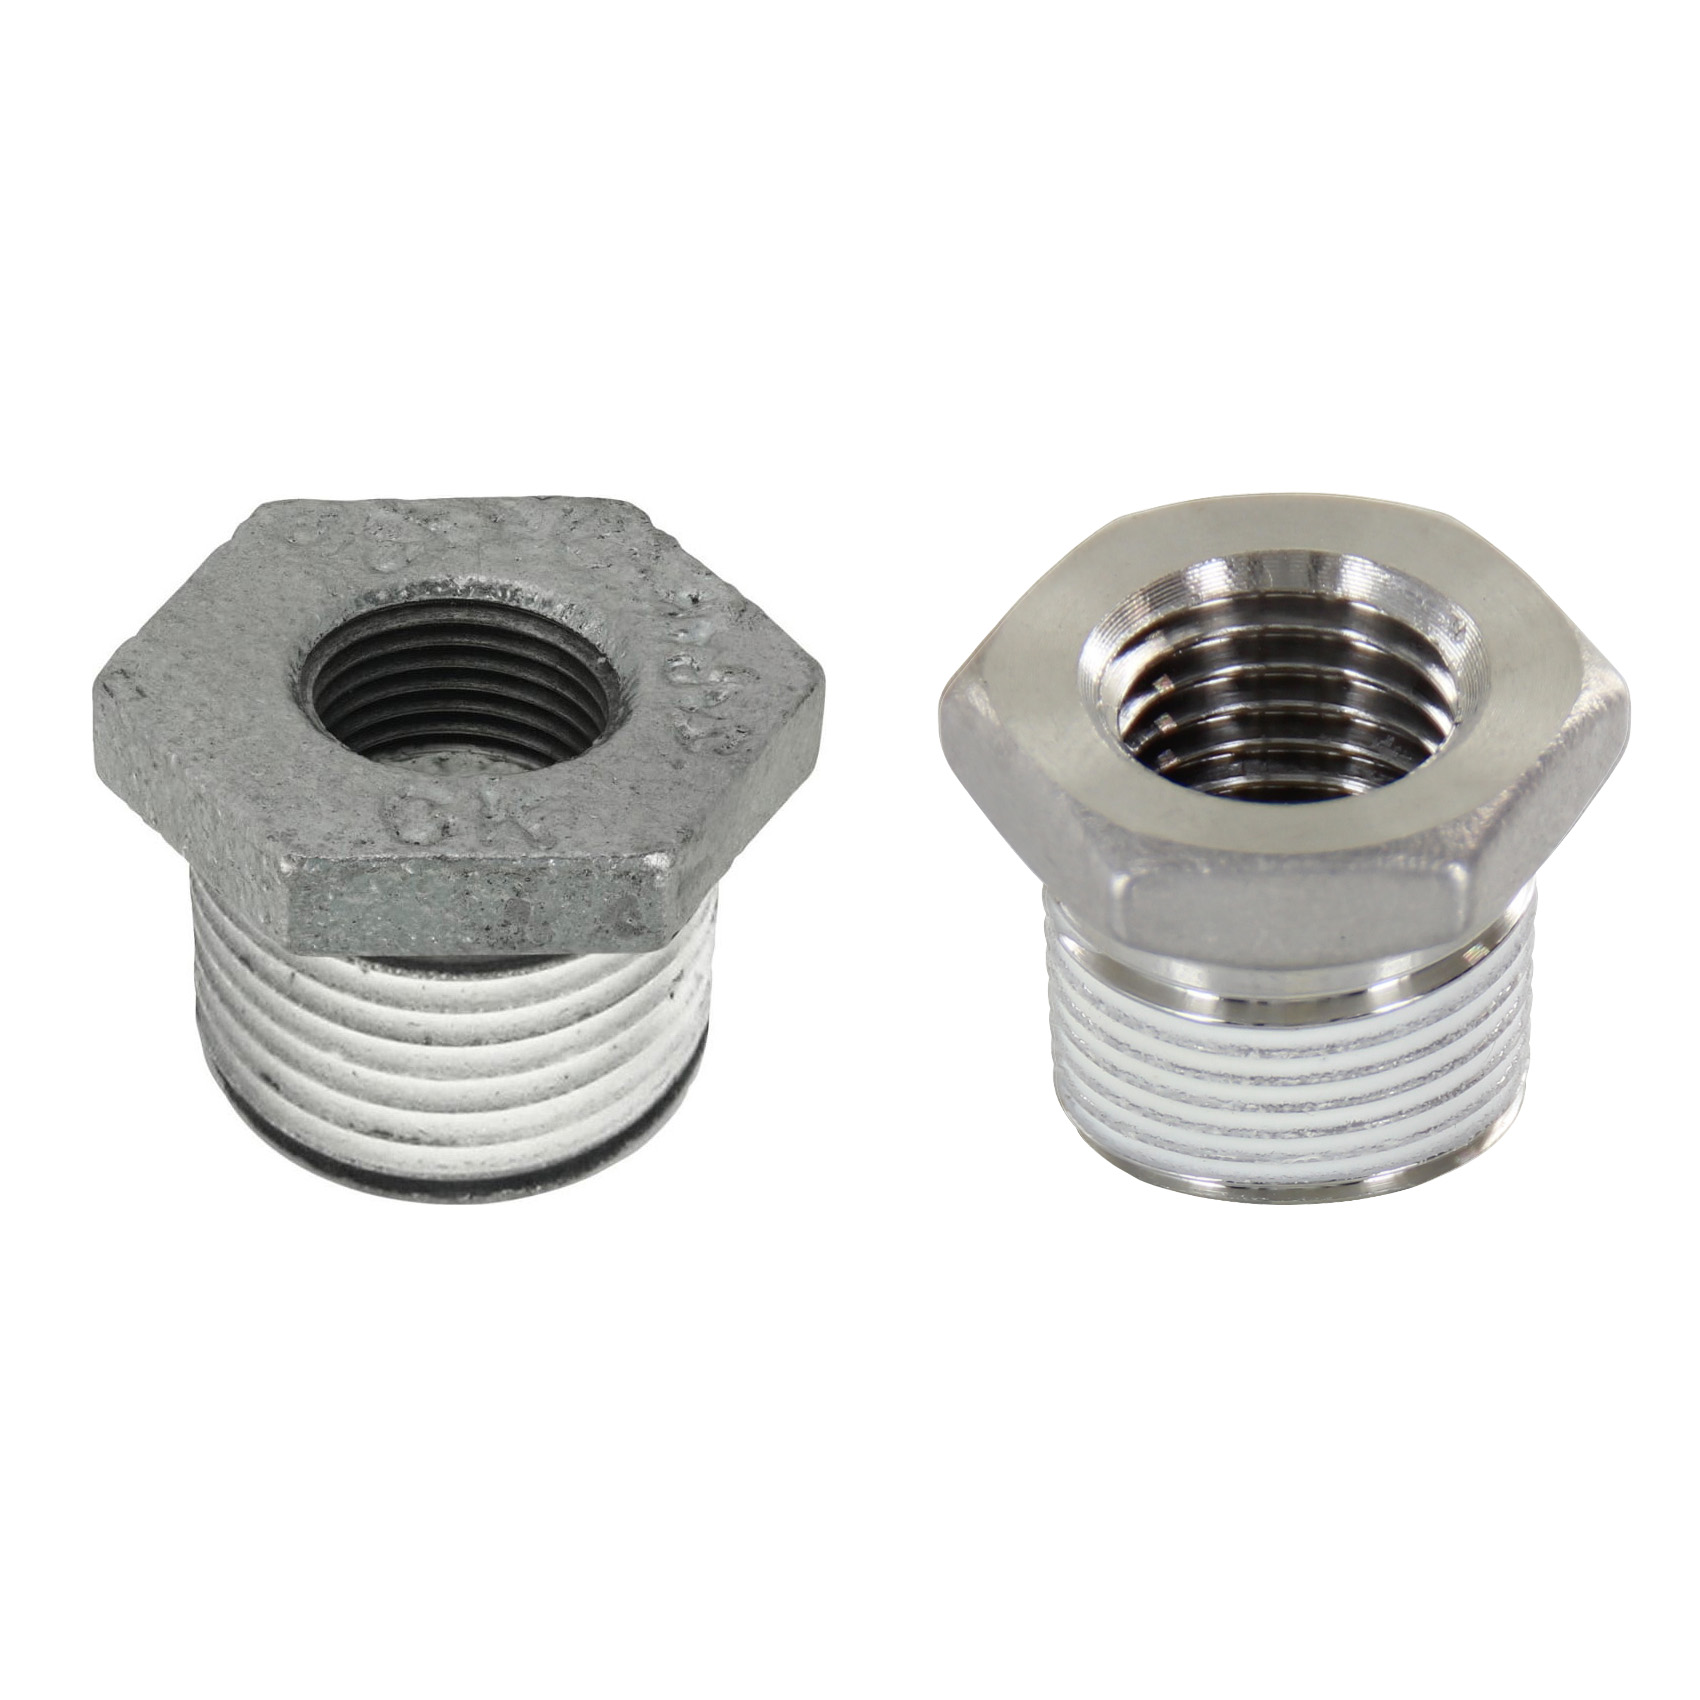 Low Pressure Screw Fittings - Thread Coated Type - Steel Pipe Fittings - Bushings (SGCPB24) 